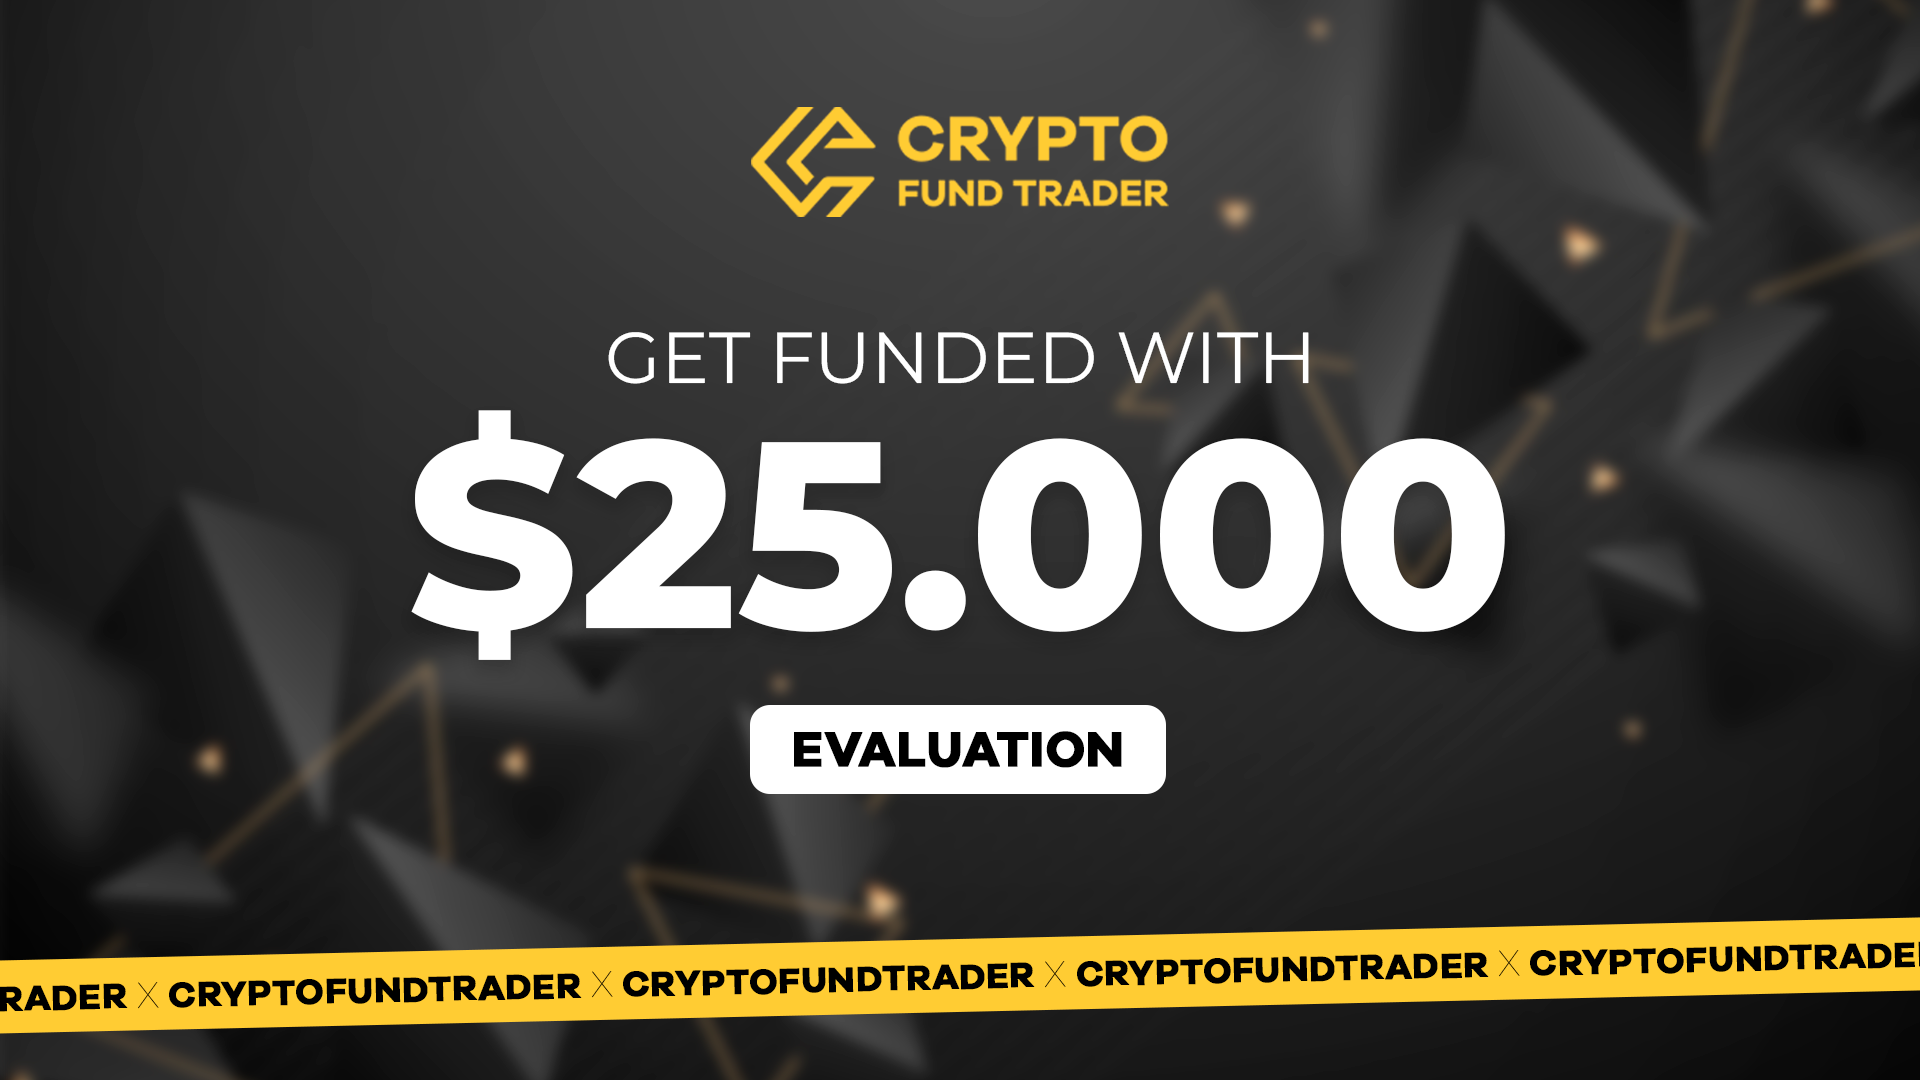 [$ 224.86] Crypto Fund Trader - $25.000 Evaluation Voucher